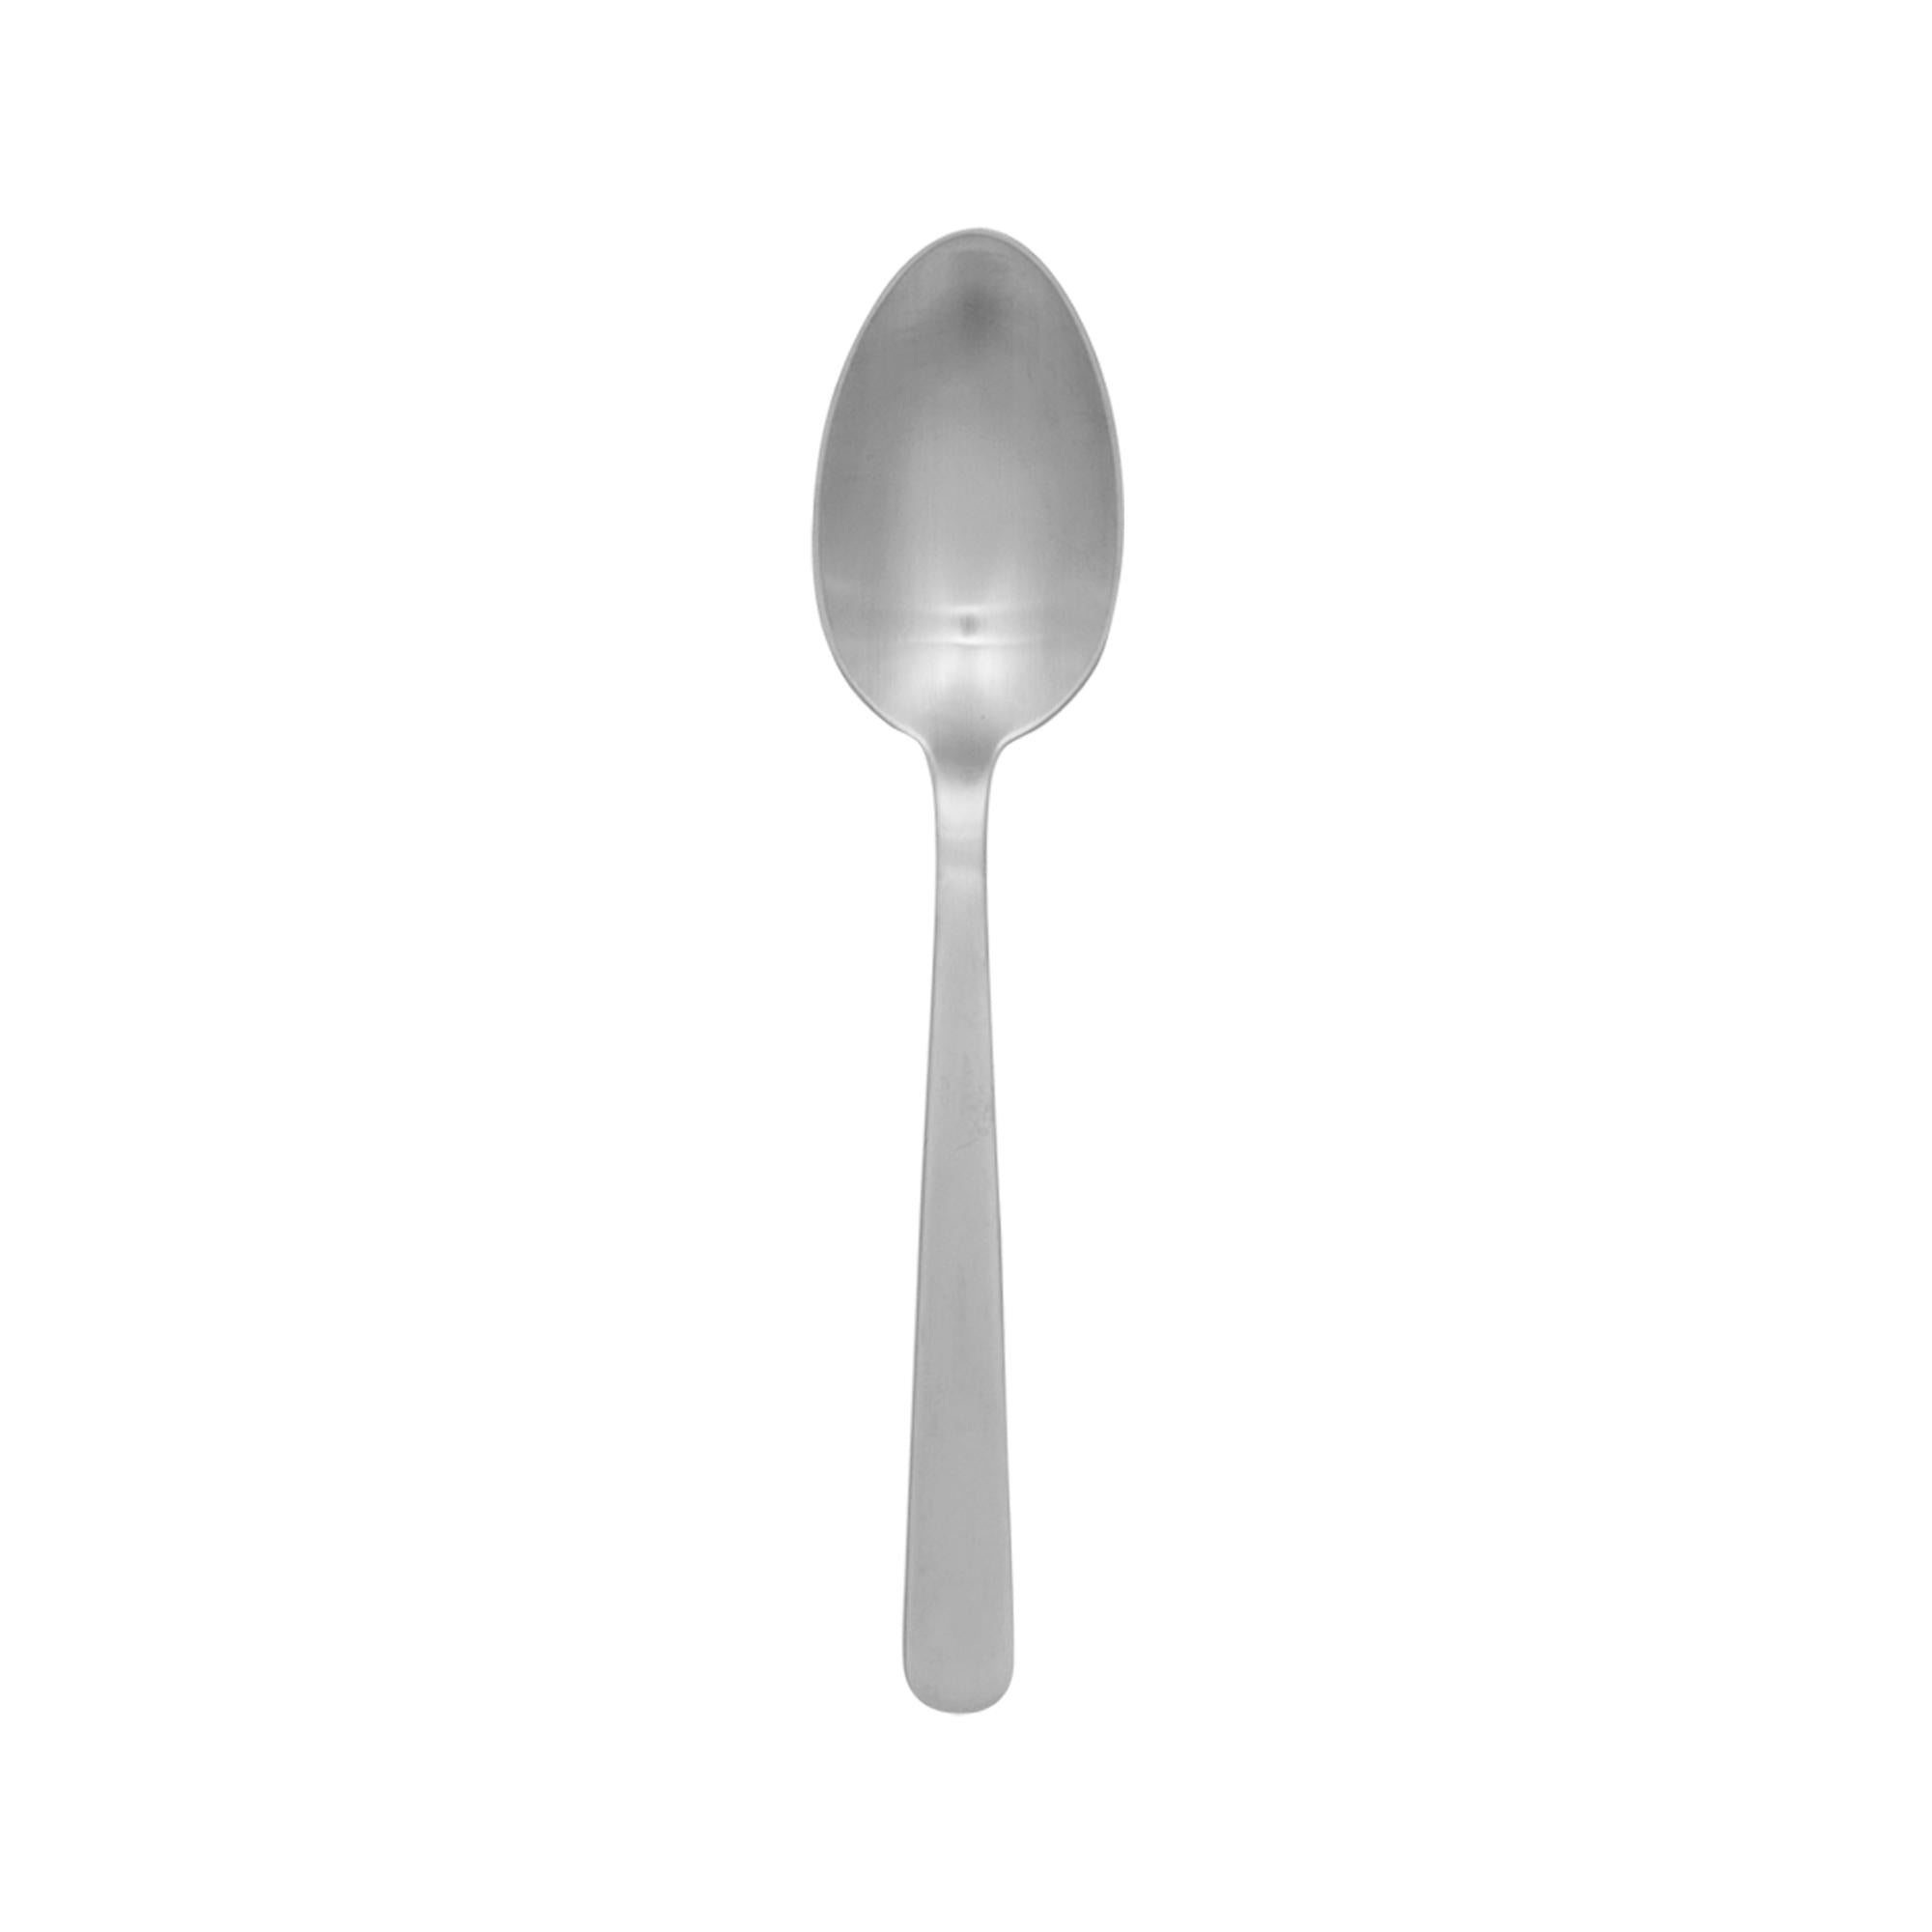 Kay Bojesen Grand Prix Dinner's Spoon, matte